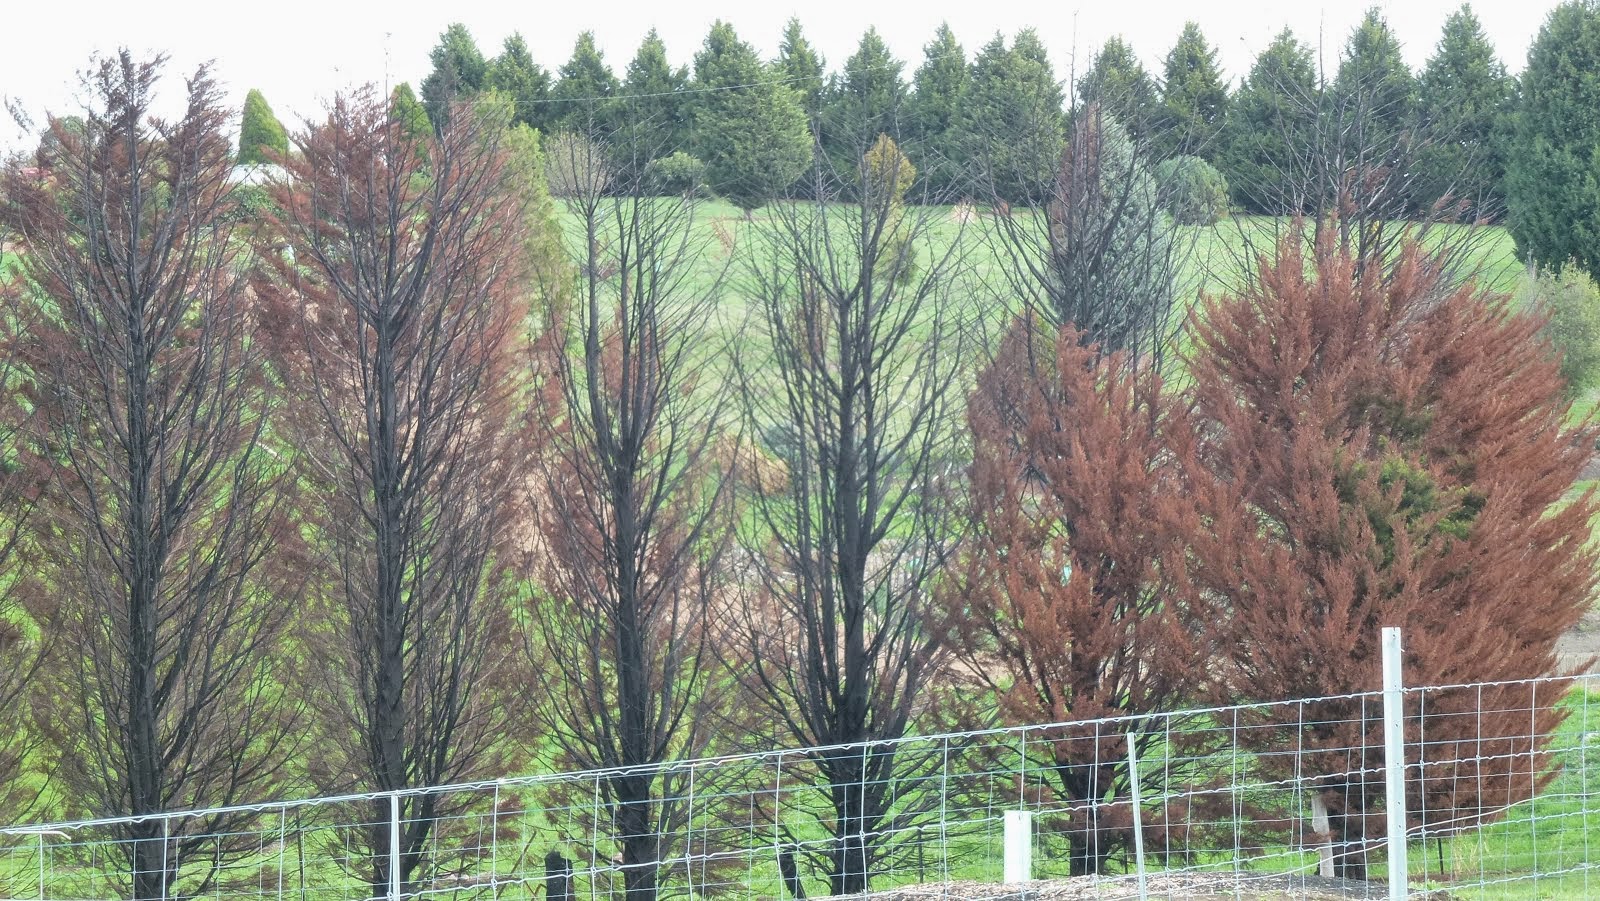 Eucalypts thrive, Pines die